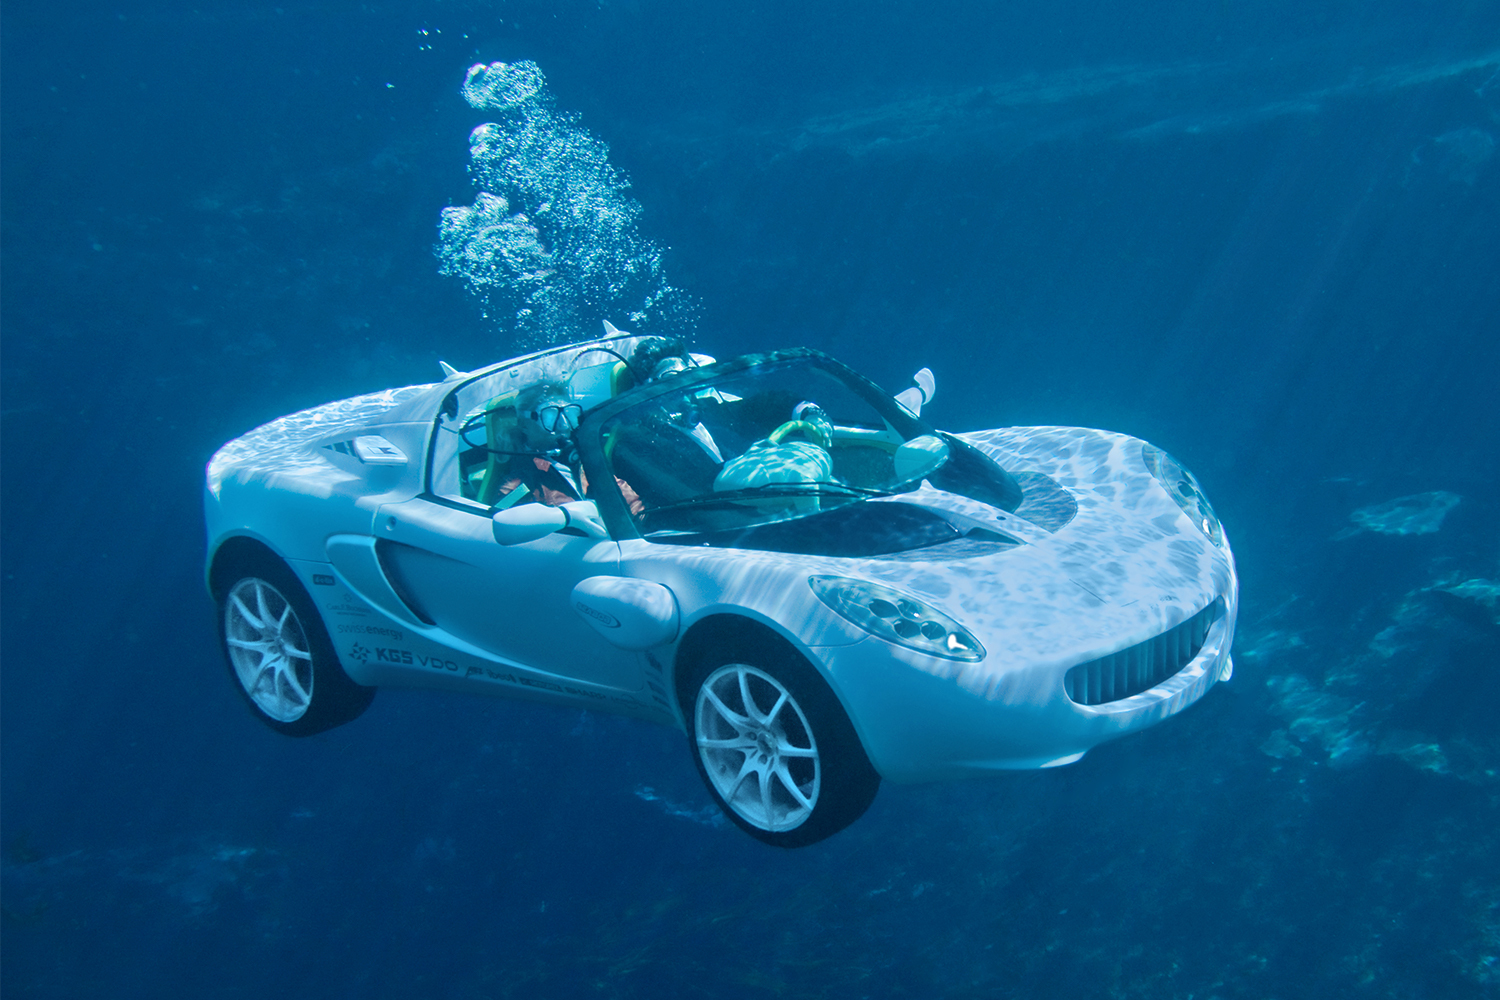 La voiture aquatique sQuba de Rinspeed, illustrée ici avec les passagers portant un équipement de plongée et la voiture sous l'eau